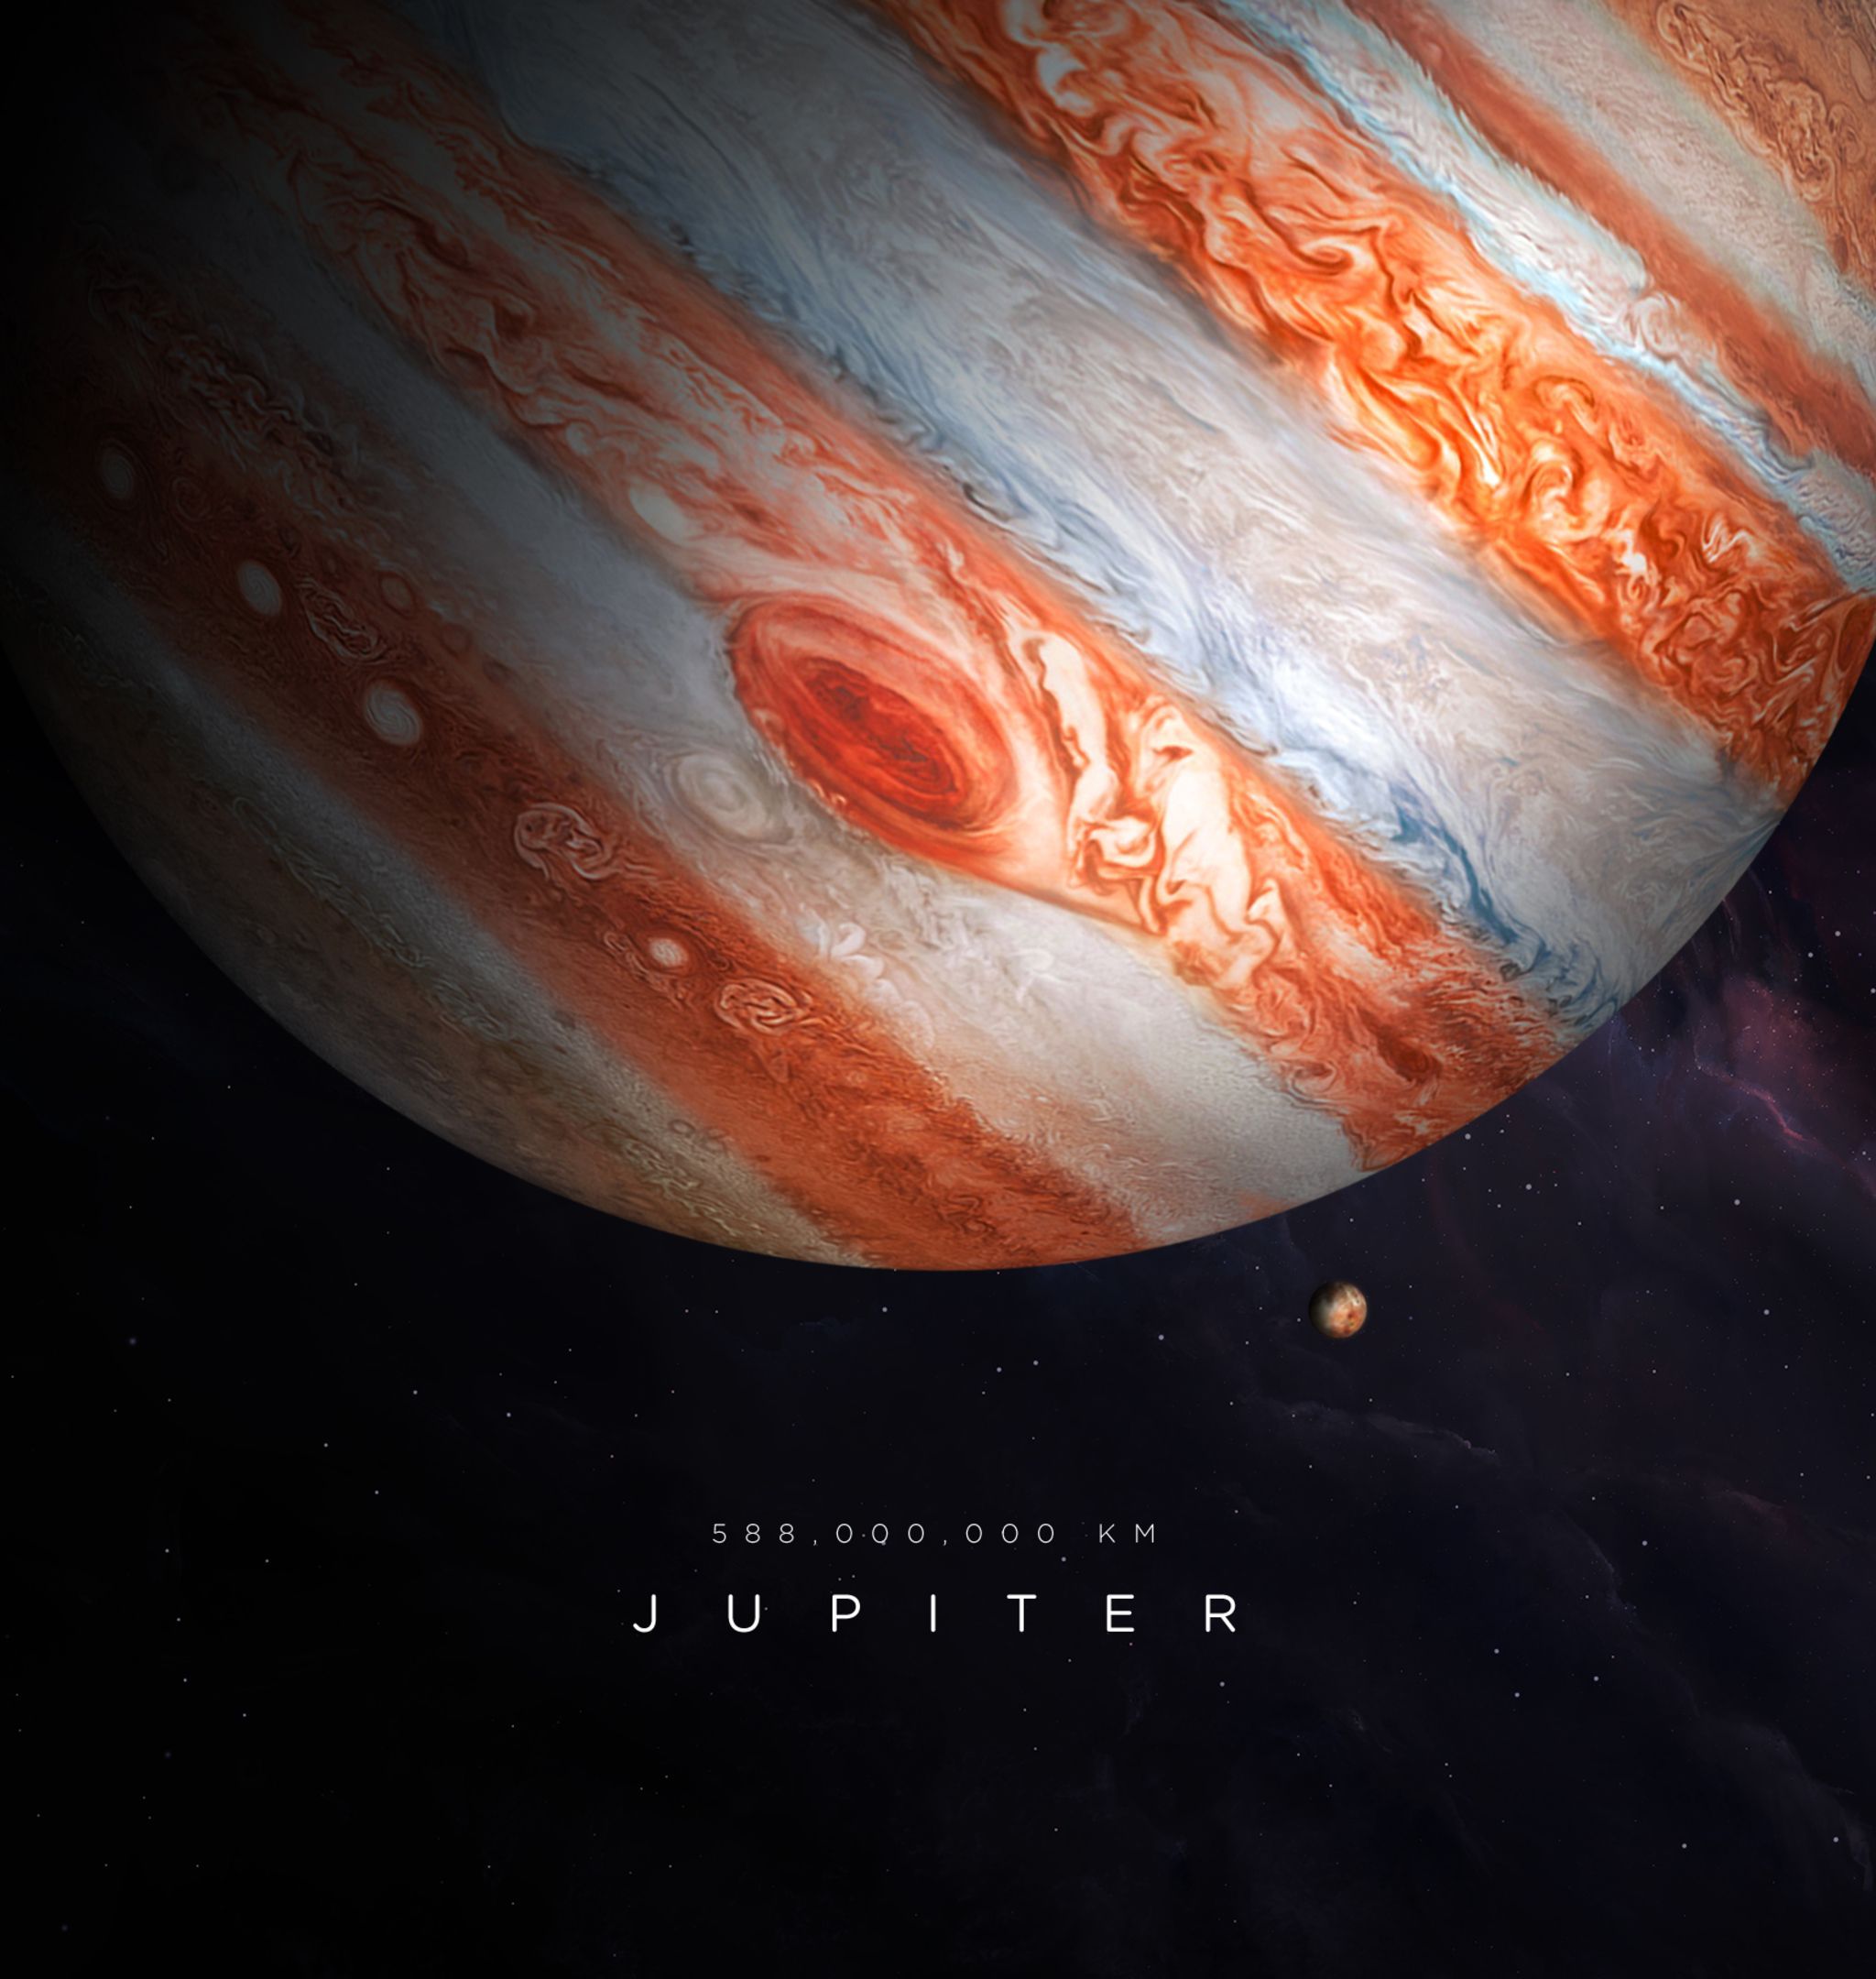 iPad Pro Jupiter Wallpaper Download. Jupiter wallpaper, Jupiter, Wallpaper downloads